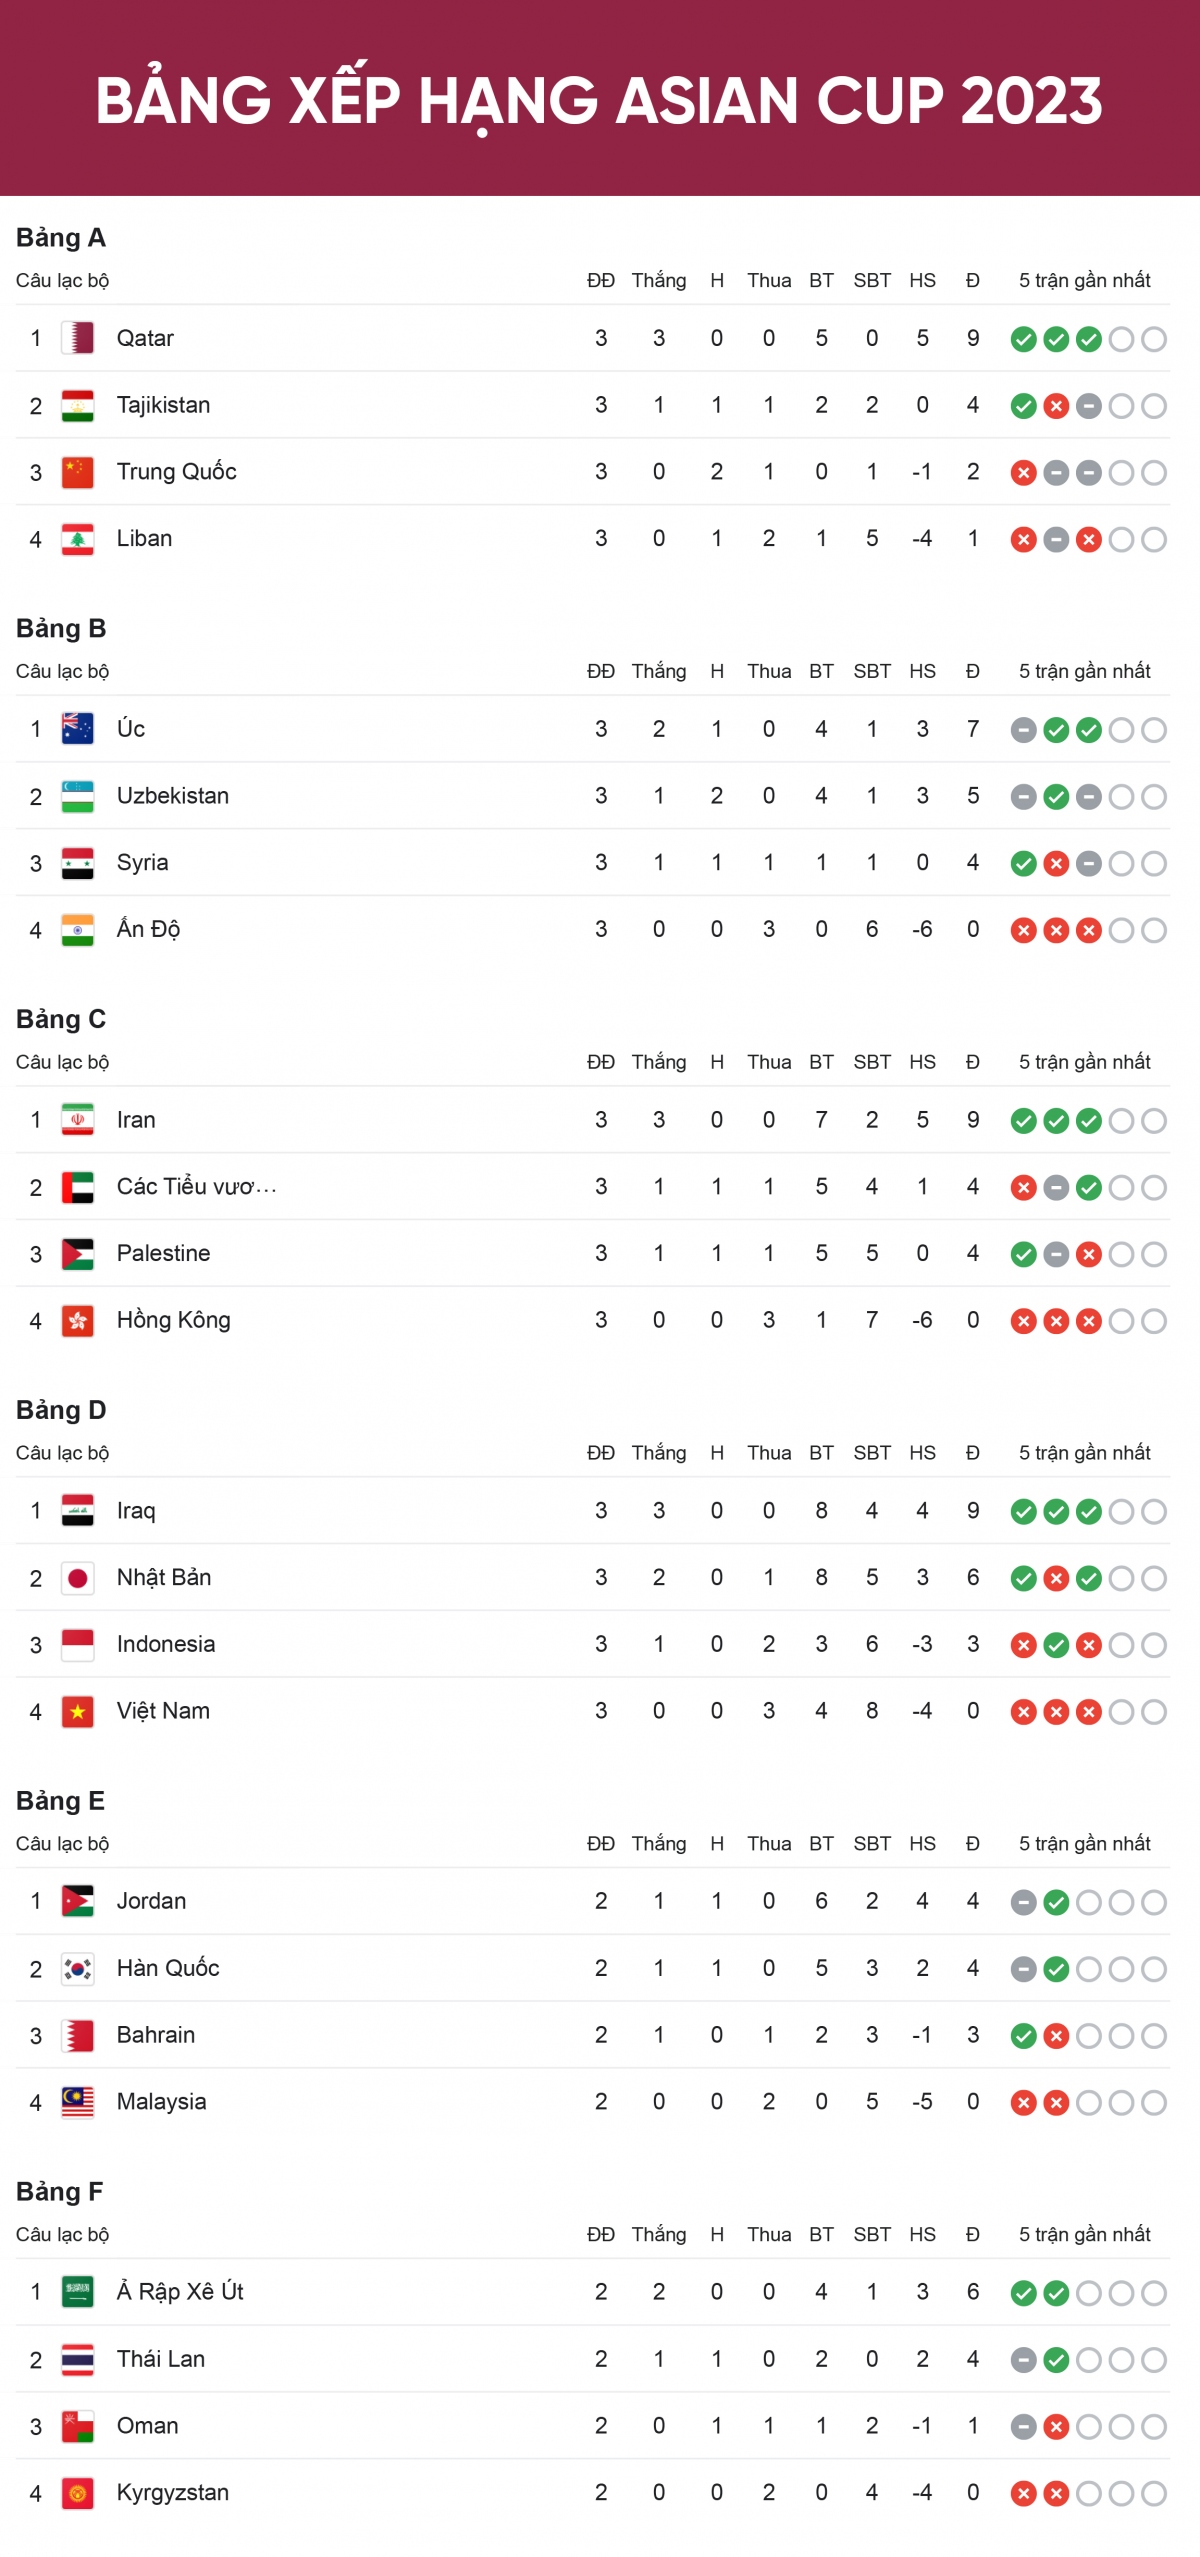 Bảng xếp hạng Asian Cup 2023 mới nhất: 12 đội đã có vé vào vòng 1/8